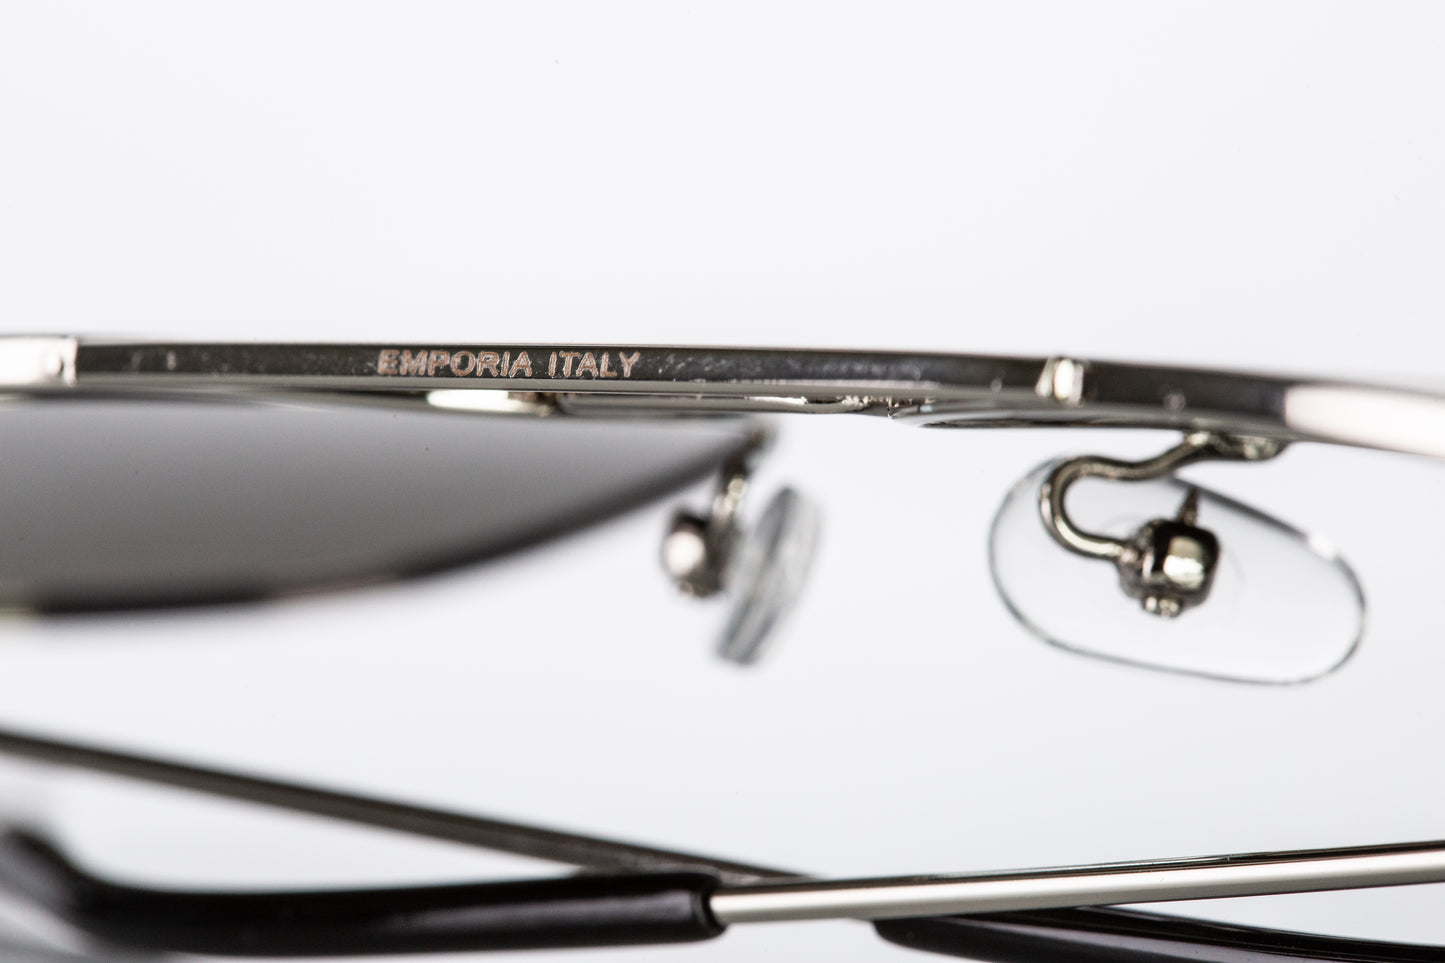 Emporia Italy - séria Aviator "PÚŠŤ", polarizované slnečné okuliare s UV filtrem, s pevným puzdrom a čistiacou handričkou, svetlo hnedé šošovky, obrúčky zlatej farby